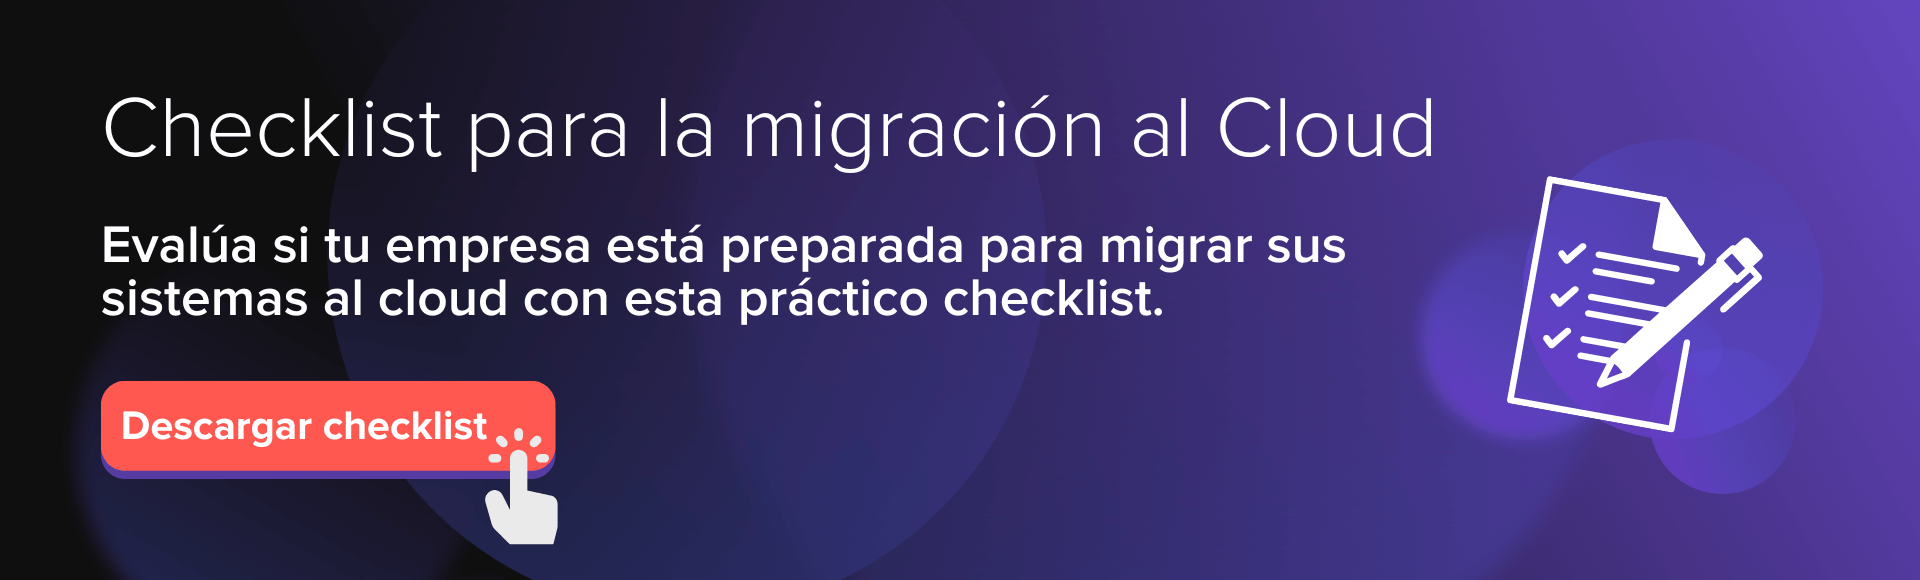 Checklist_migracion_al_cloud